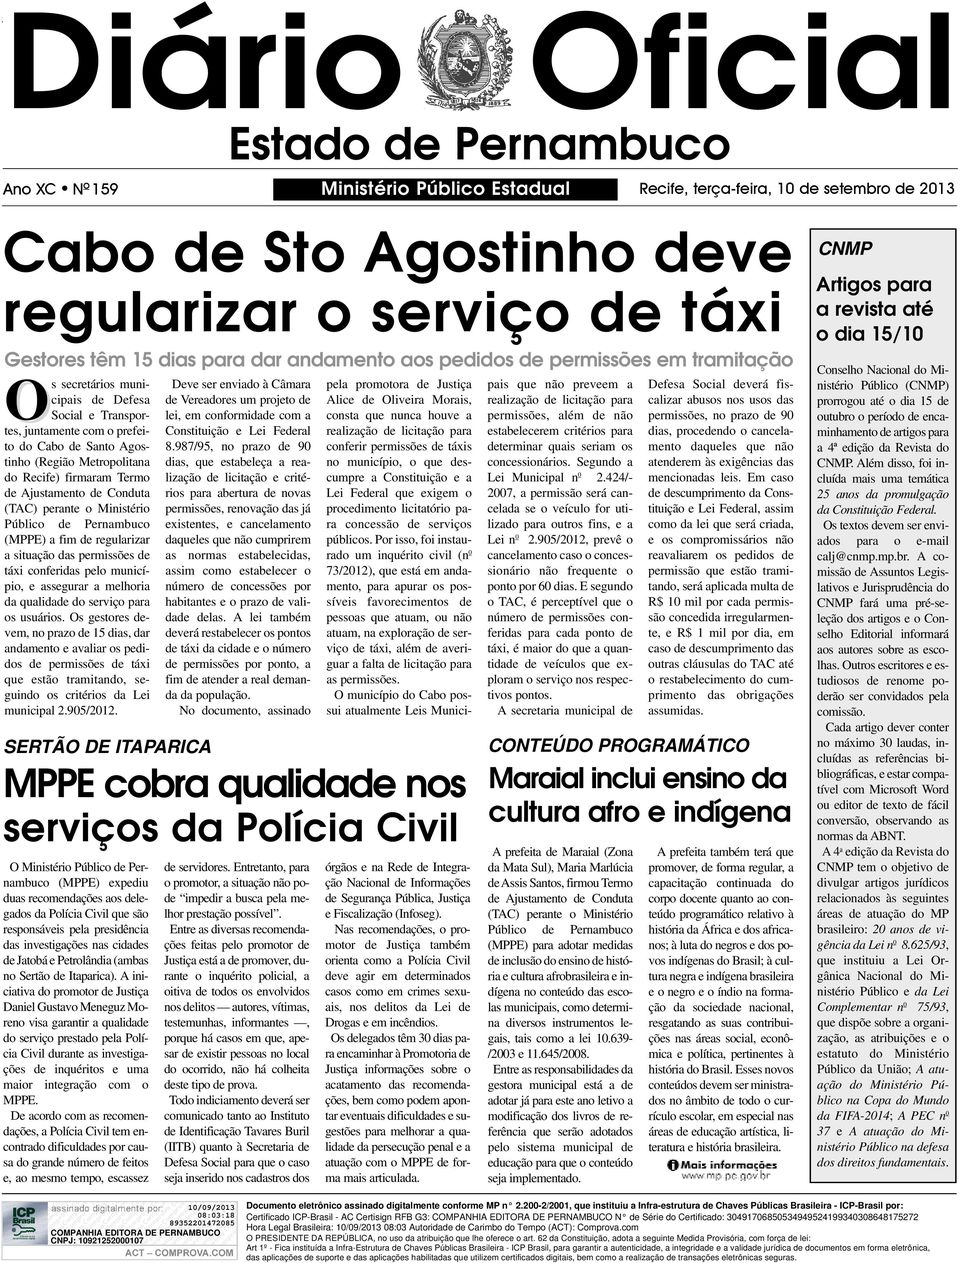 Recife) firmaram Termo de Ajustamento de Conduta (TAC) perante o Ministério Público de Pernambuco (MPPE) a fim de regularizar a situação das permissões de táxi conferidas pelo município, e assegurar